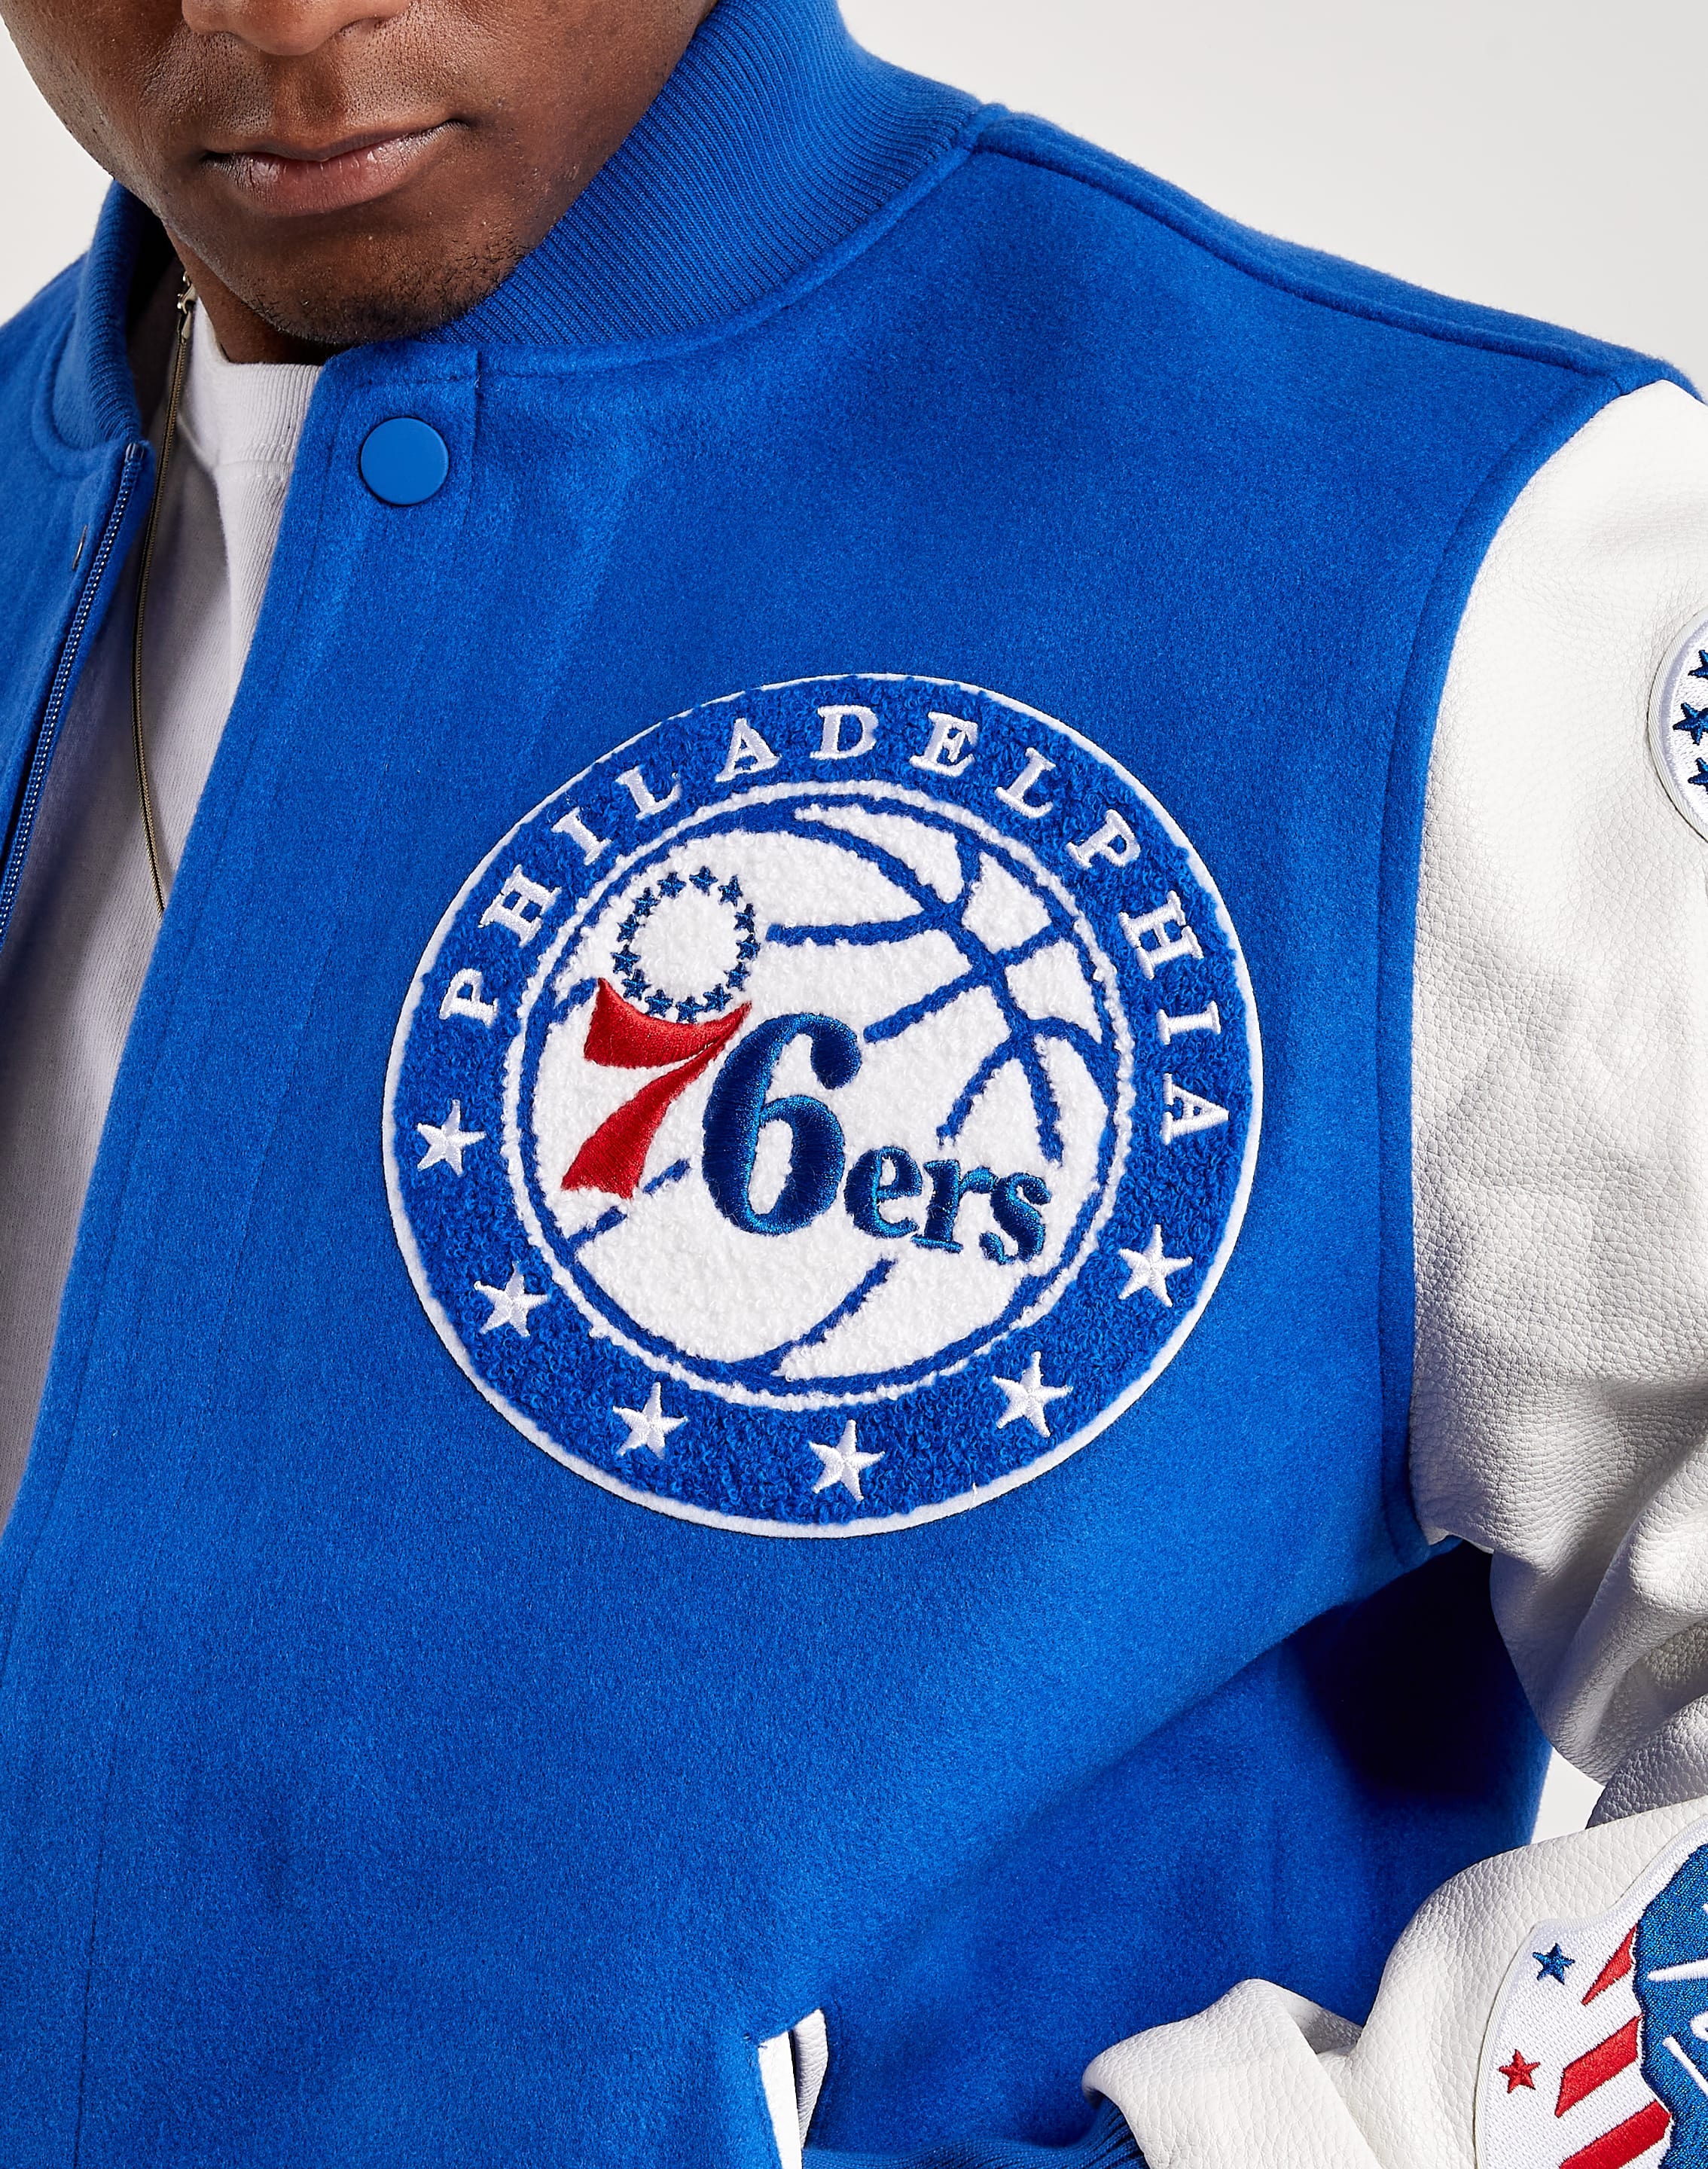 Pro Standard Philadelphia 76ers Mash Up Varsity Jacket – DTLR